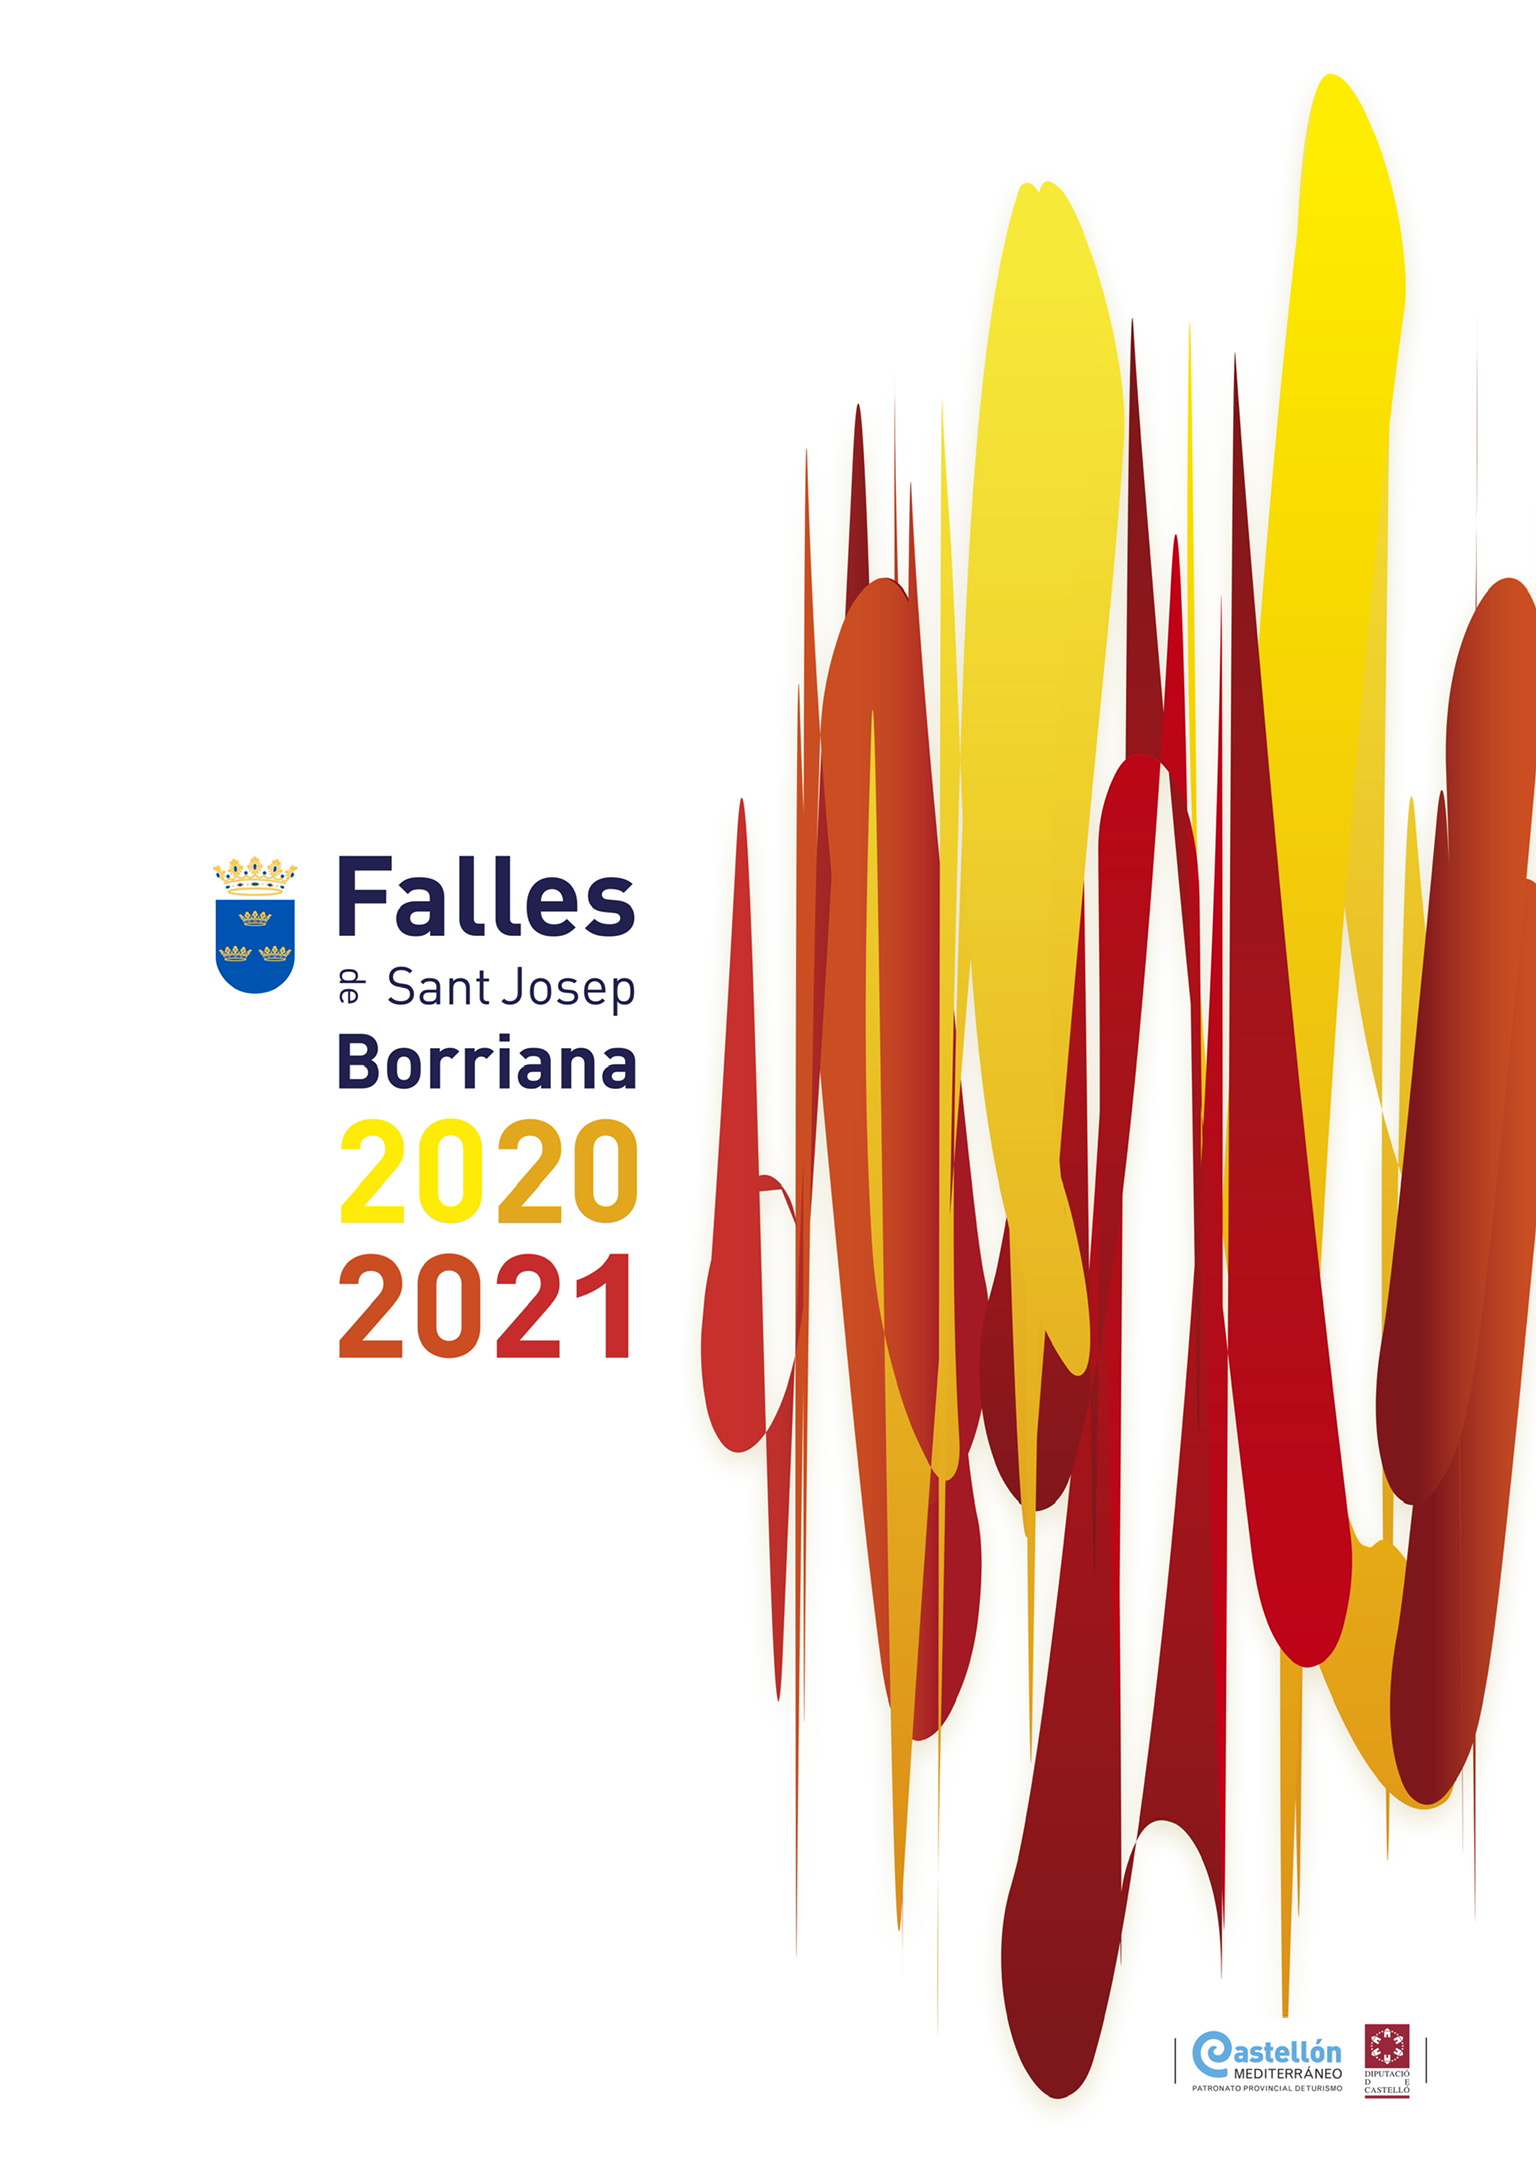 Falles de Borriana 2021